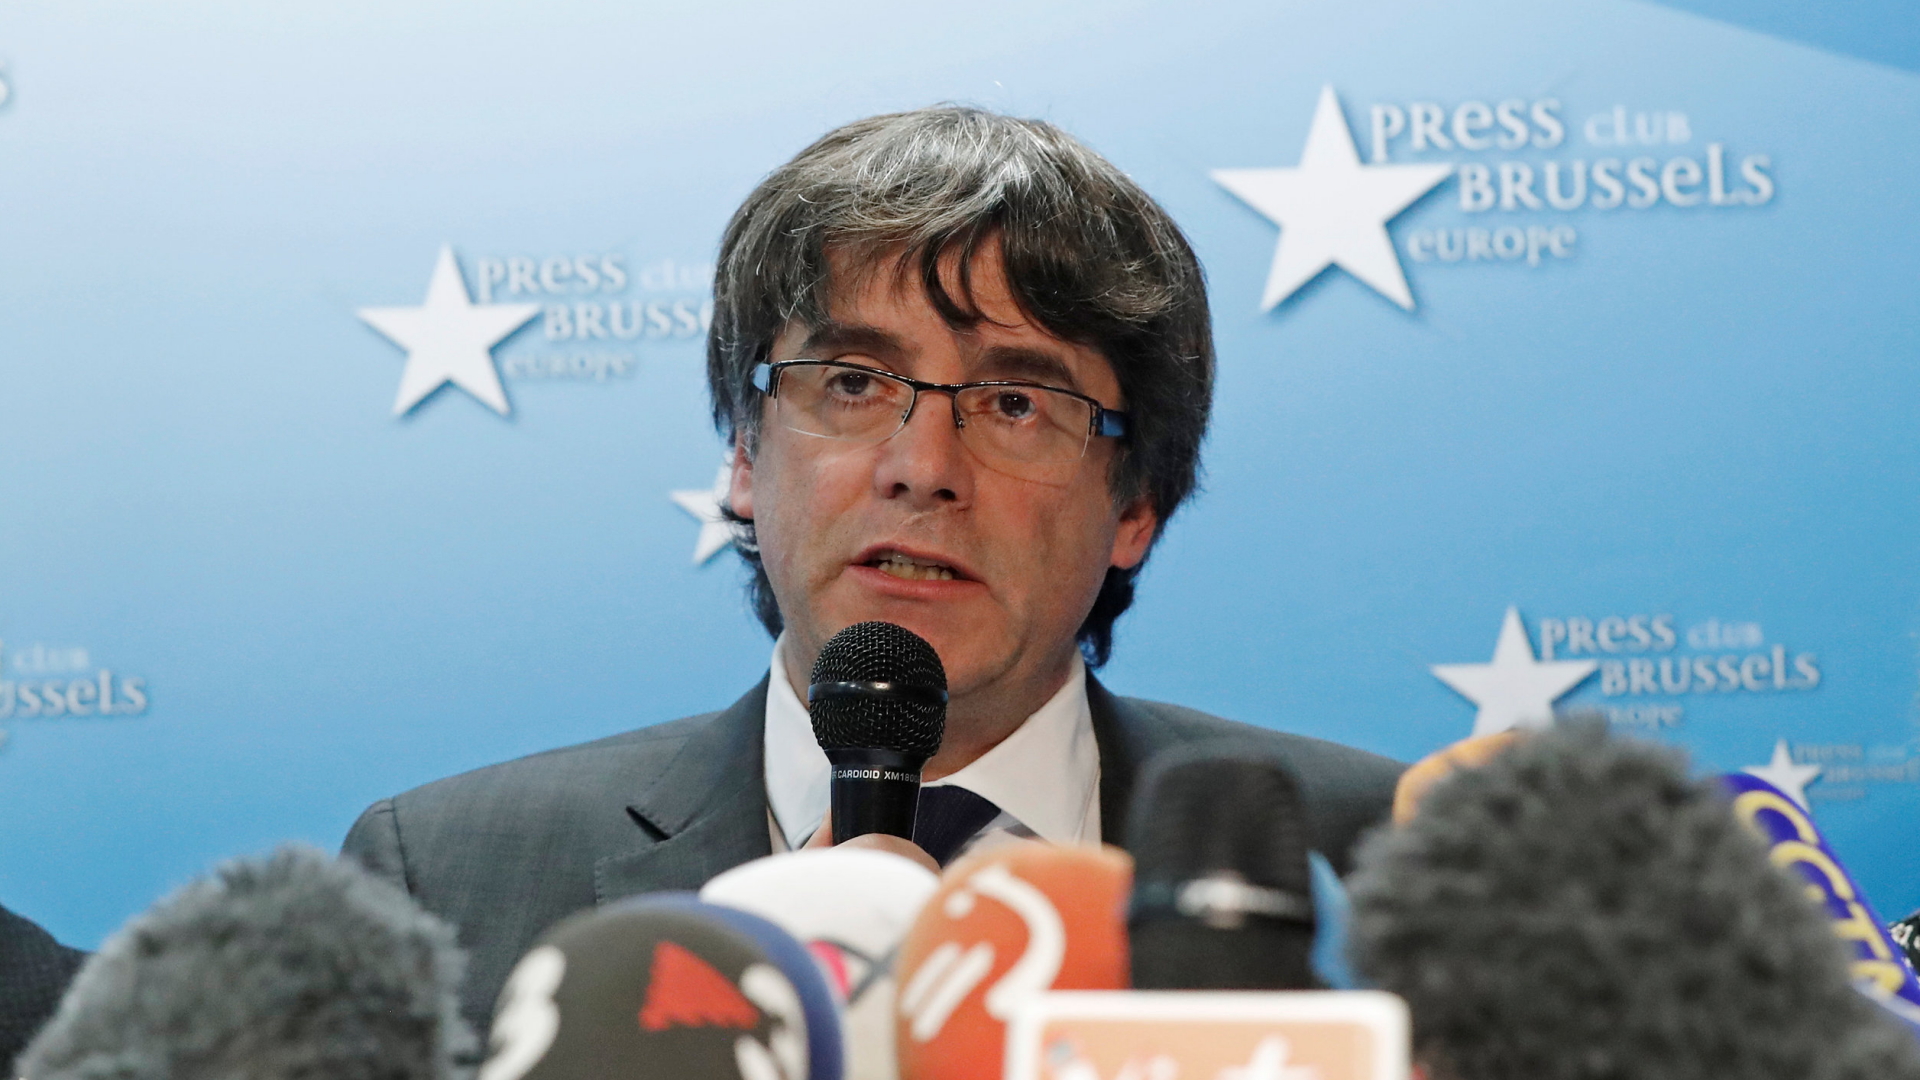 Carles Puigdemont bei einer Pressekonferenz in Brüssel | REUTERS